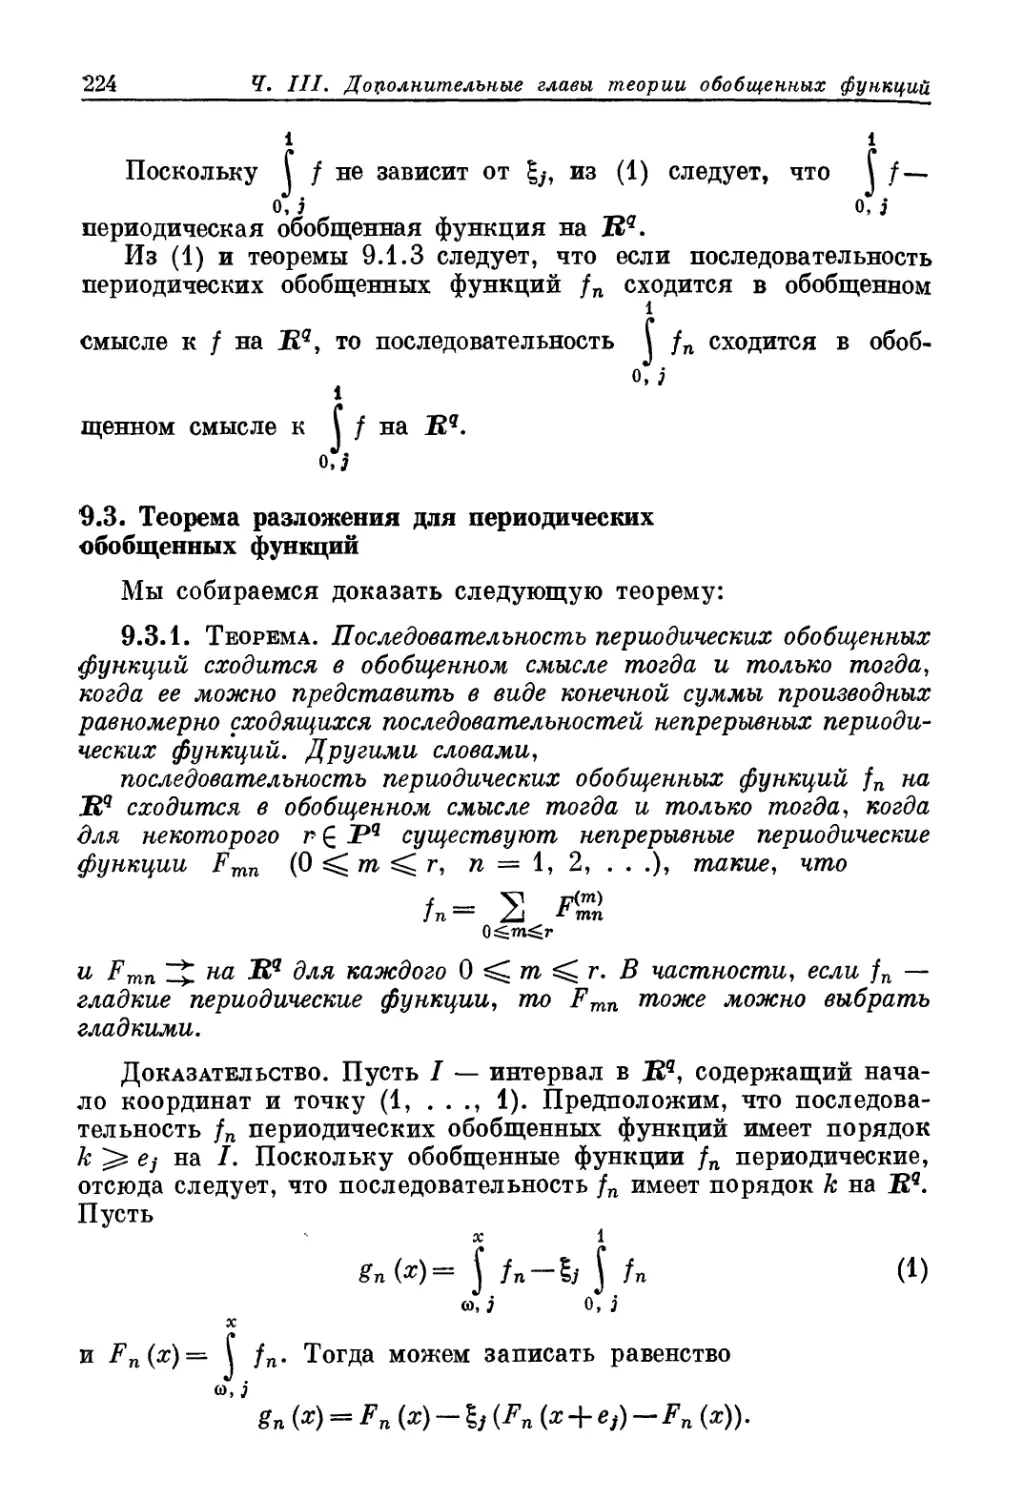 9.3. Теорема разложения для периодических обобщенных функций